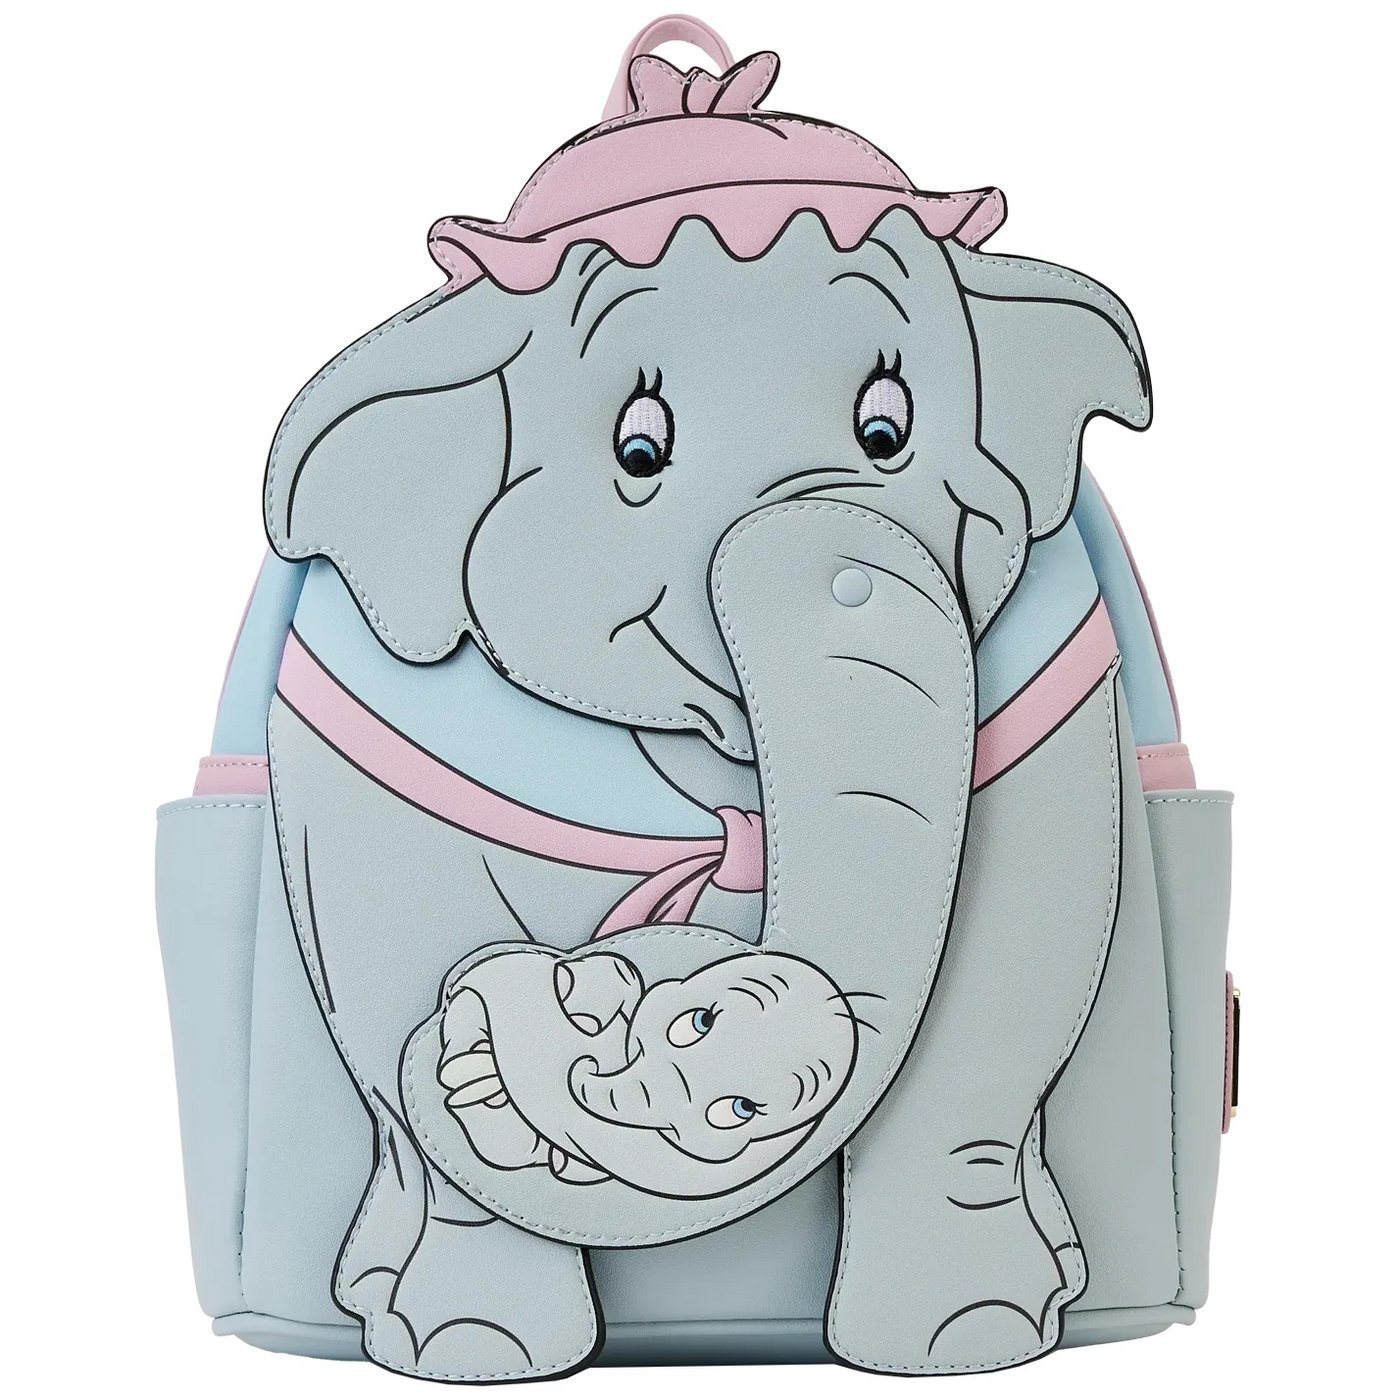 Dumbo Mrs Jumbo Cradle Trunk Cosplay